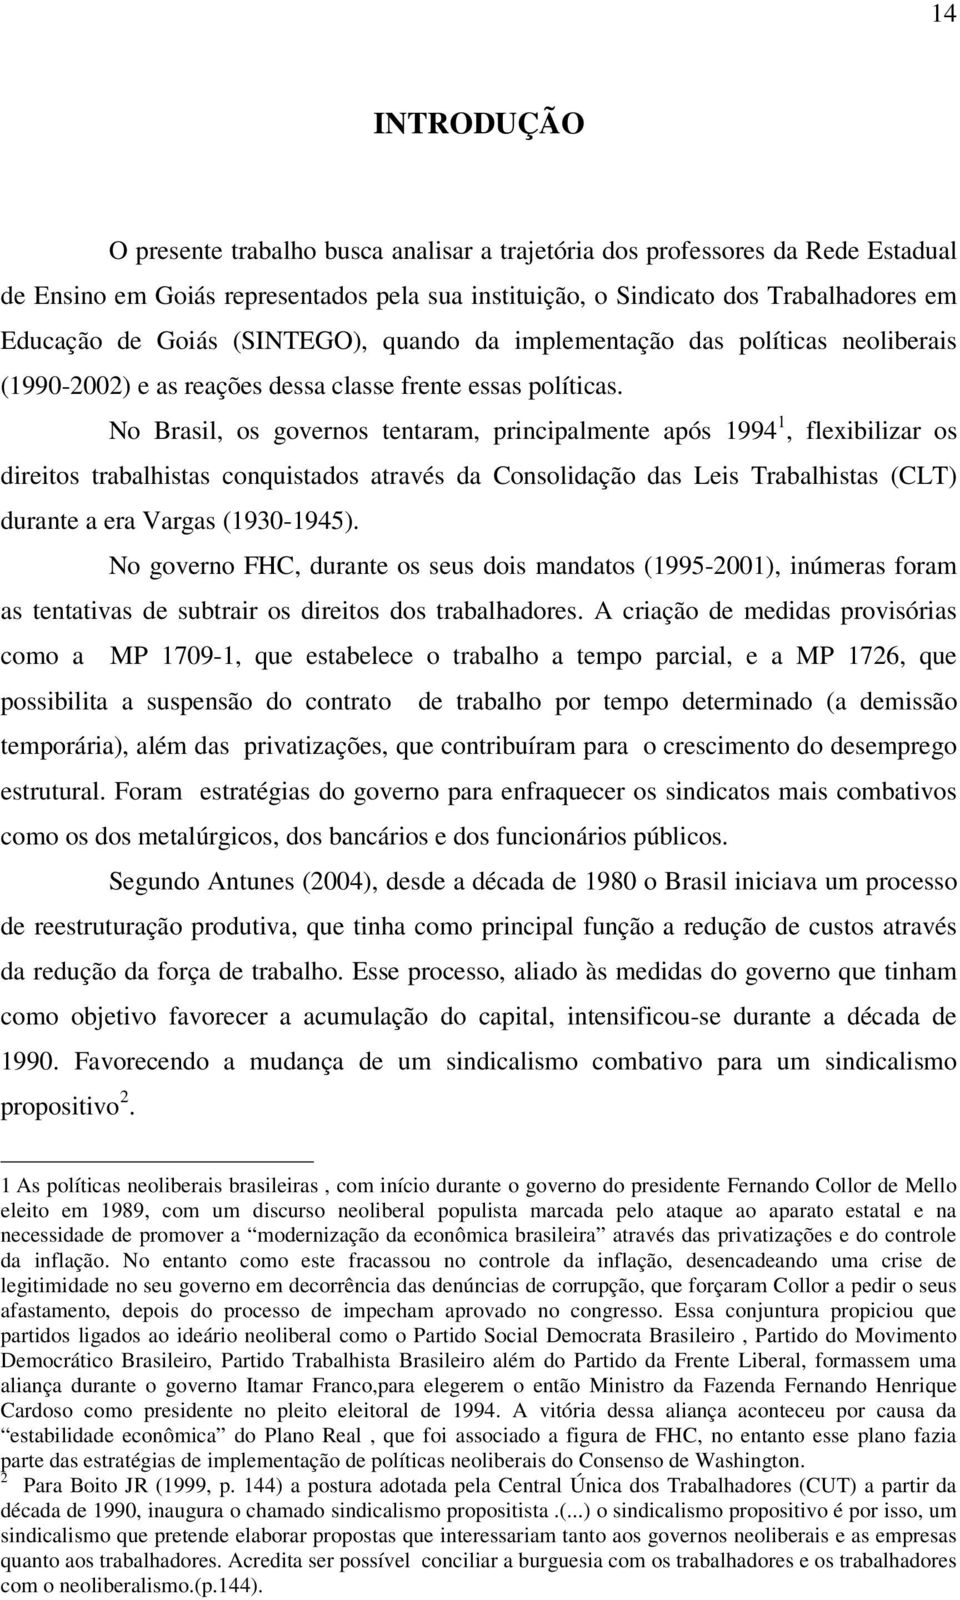 No Brasil, os governos tentaram, principalmente após 1994 1, flexibilizar os direitos trabalhistas conquistados através da Consolidação das Leis Trabalhistas (CLT) durante a era Vargas (1930-1945).